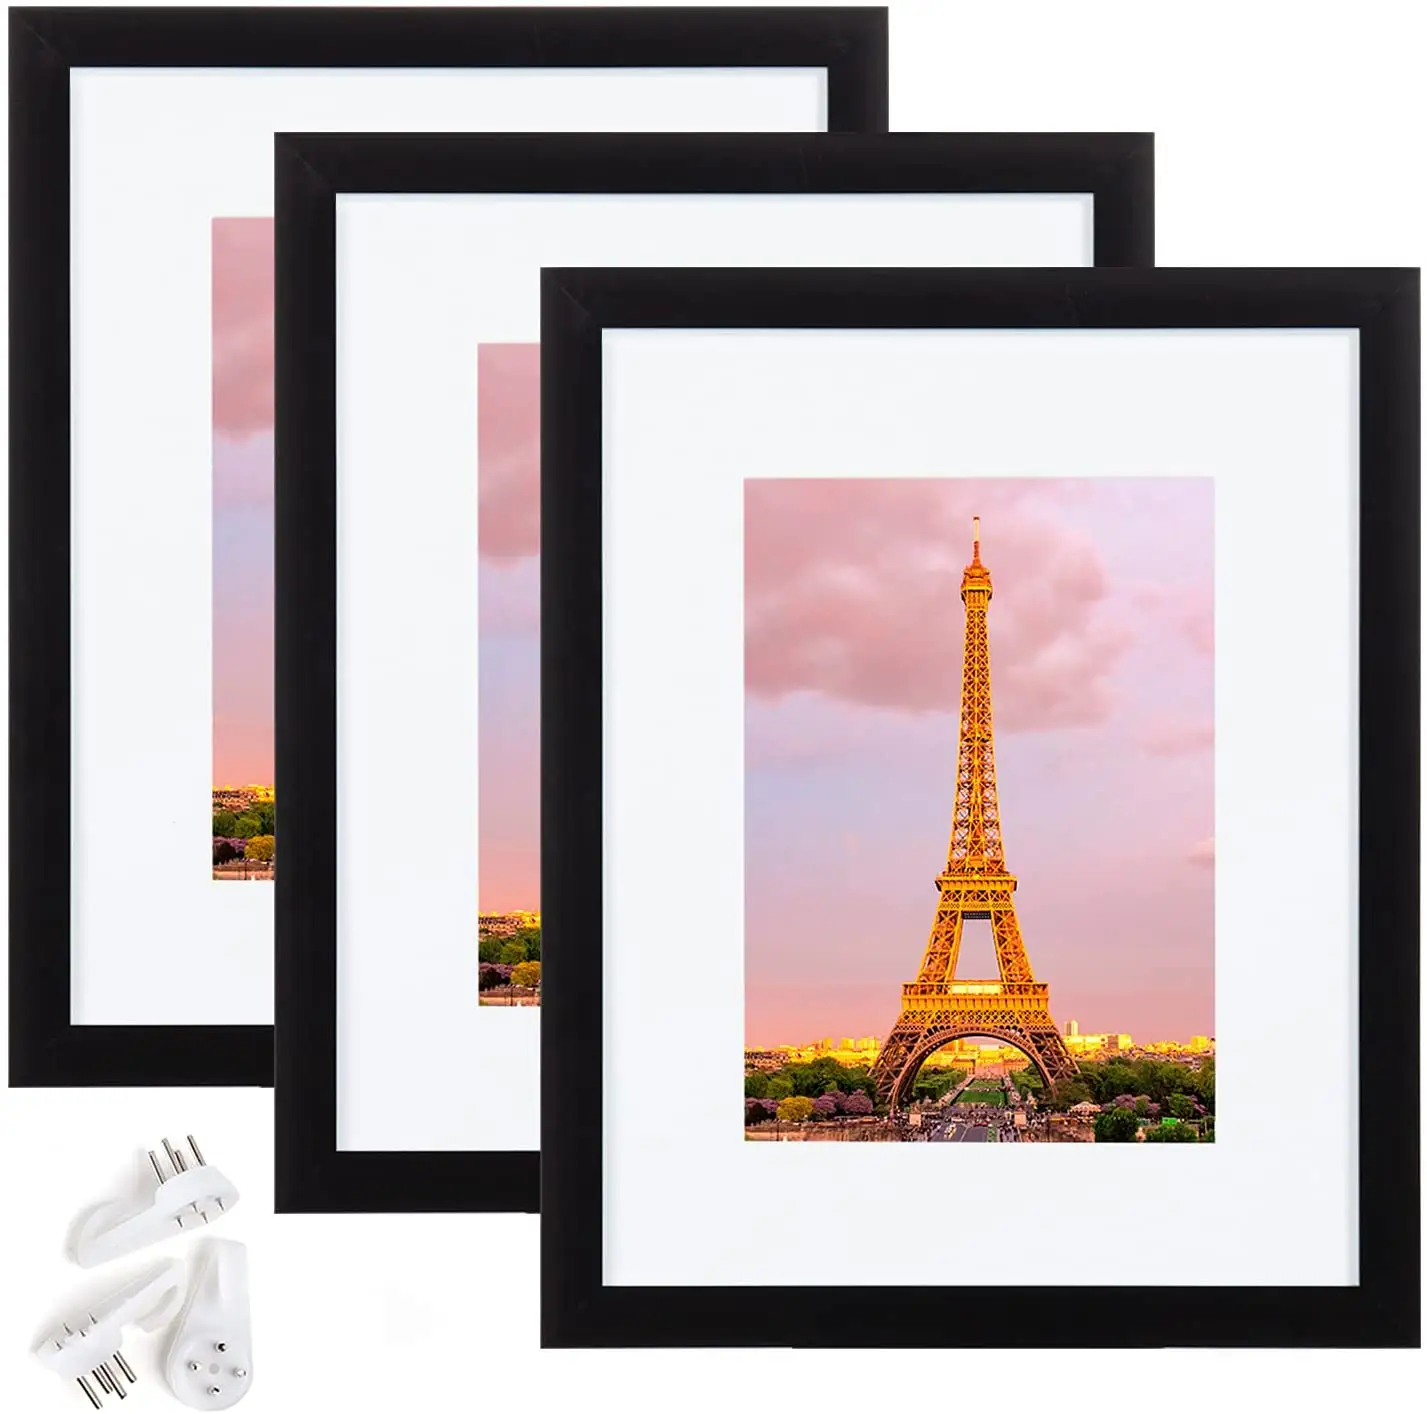 Quadro de fotos 8x10 feita de vidro de alta definição, para 5x7 com tapete ou 8x10 sem tapete, moldura de fotos de montagem na parede